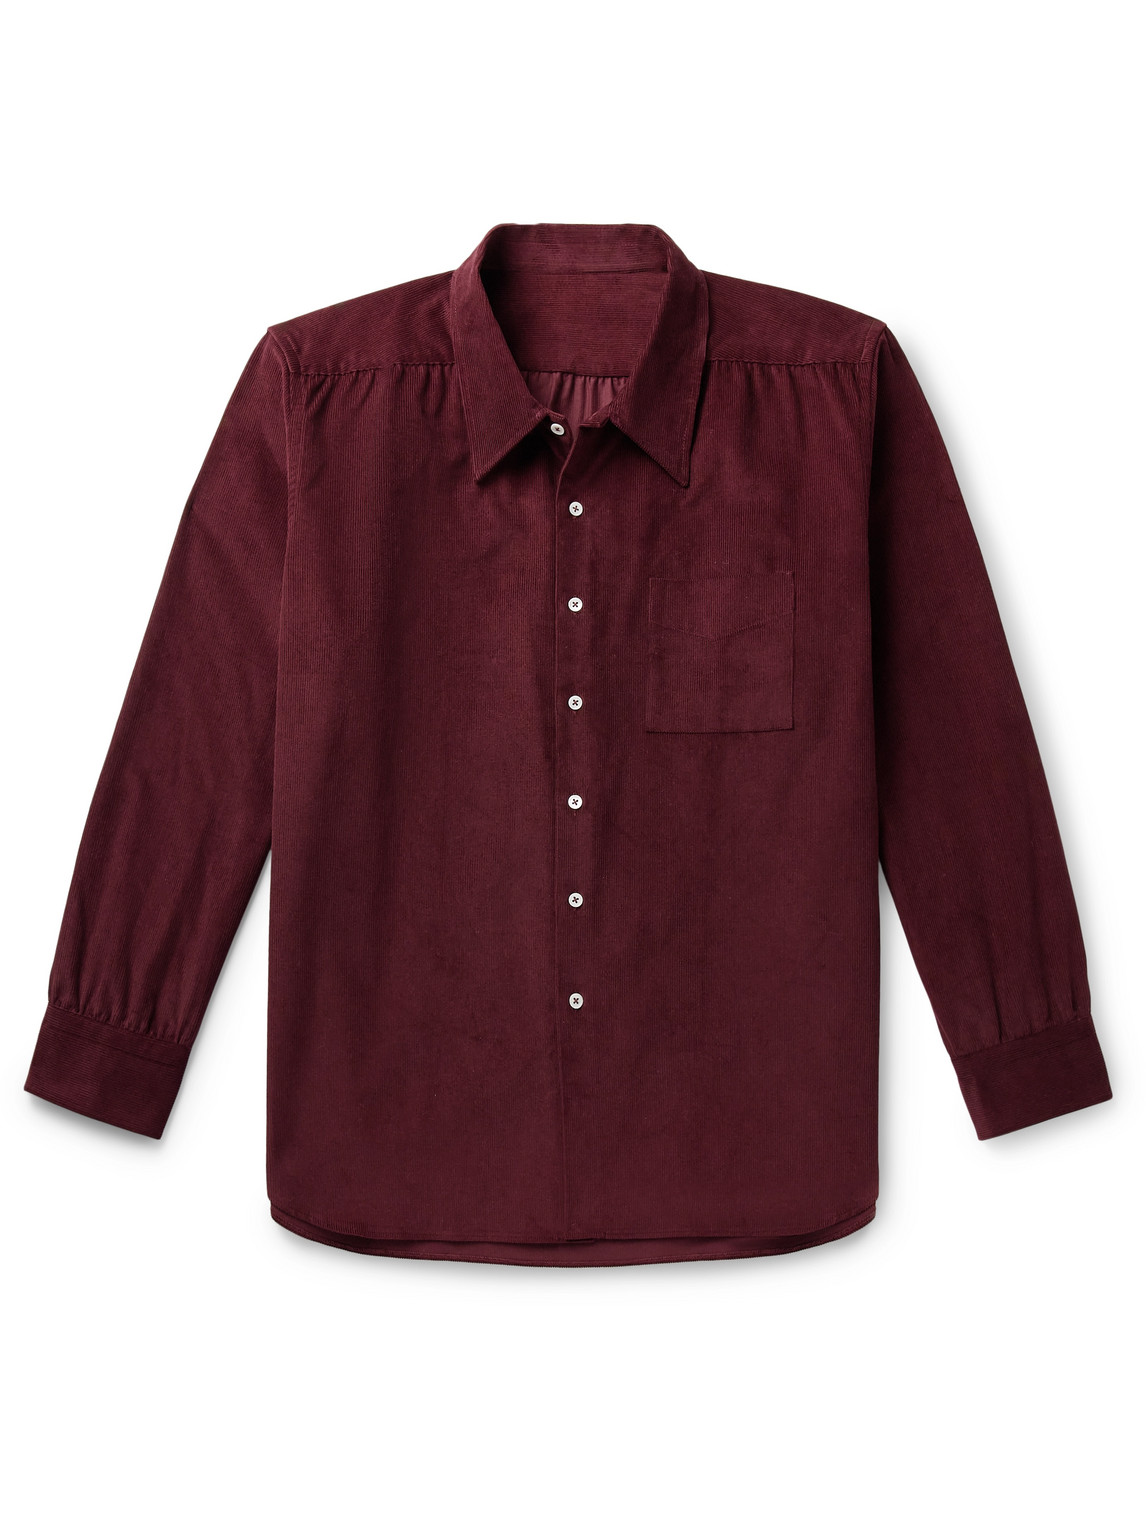 Anderson & Sheppard - Cotton-Corduroy Shirt - Men - Burgundy - XL von Anderson & Sheppard